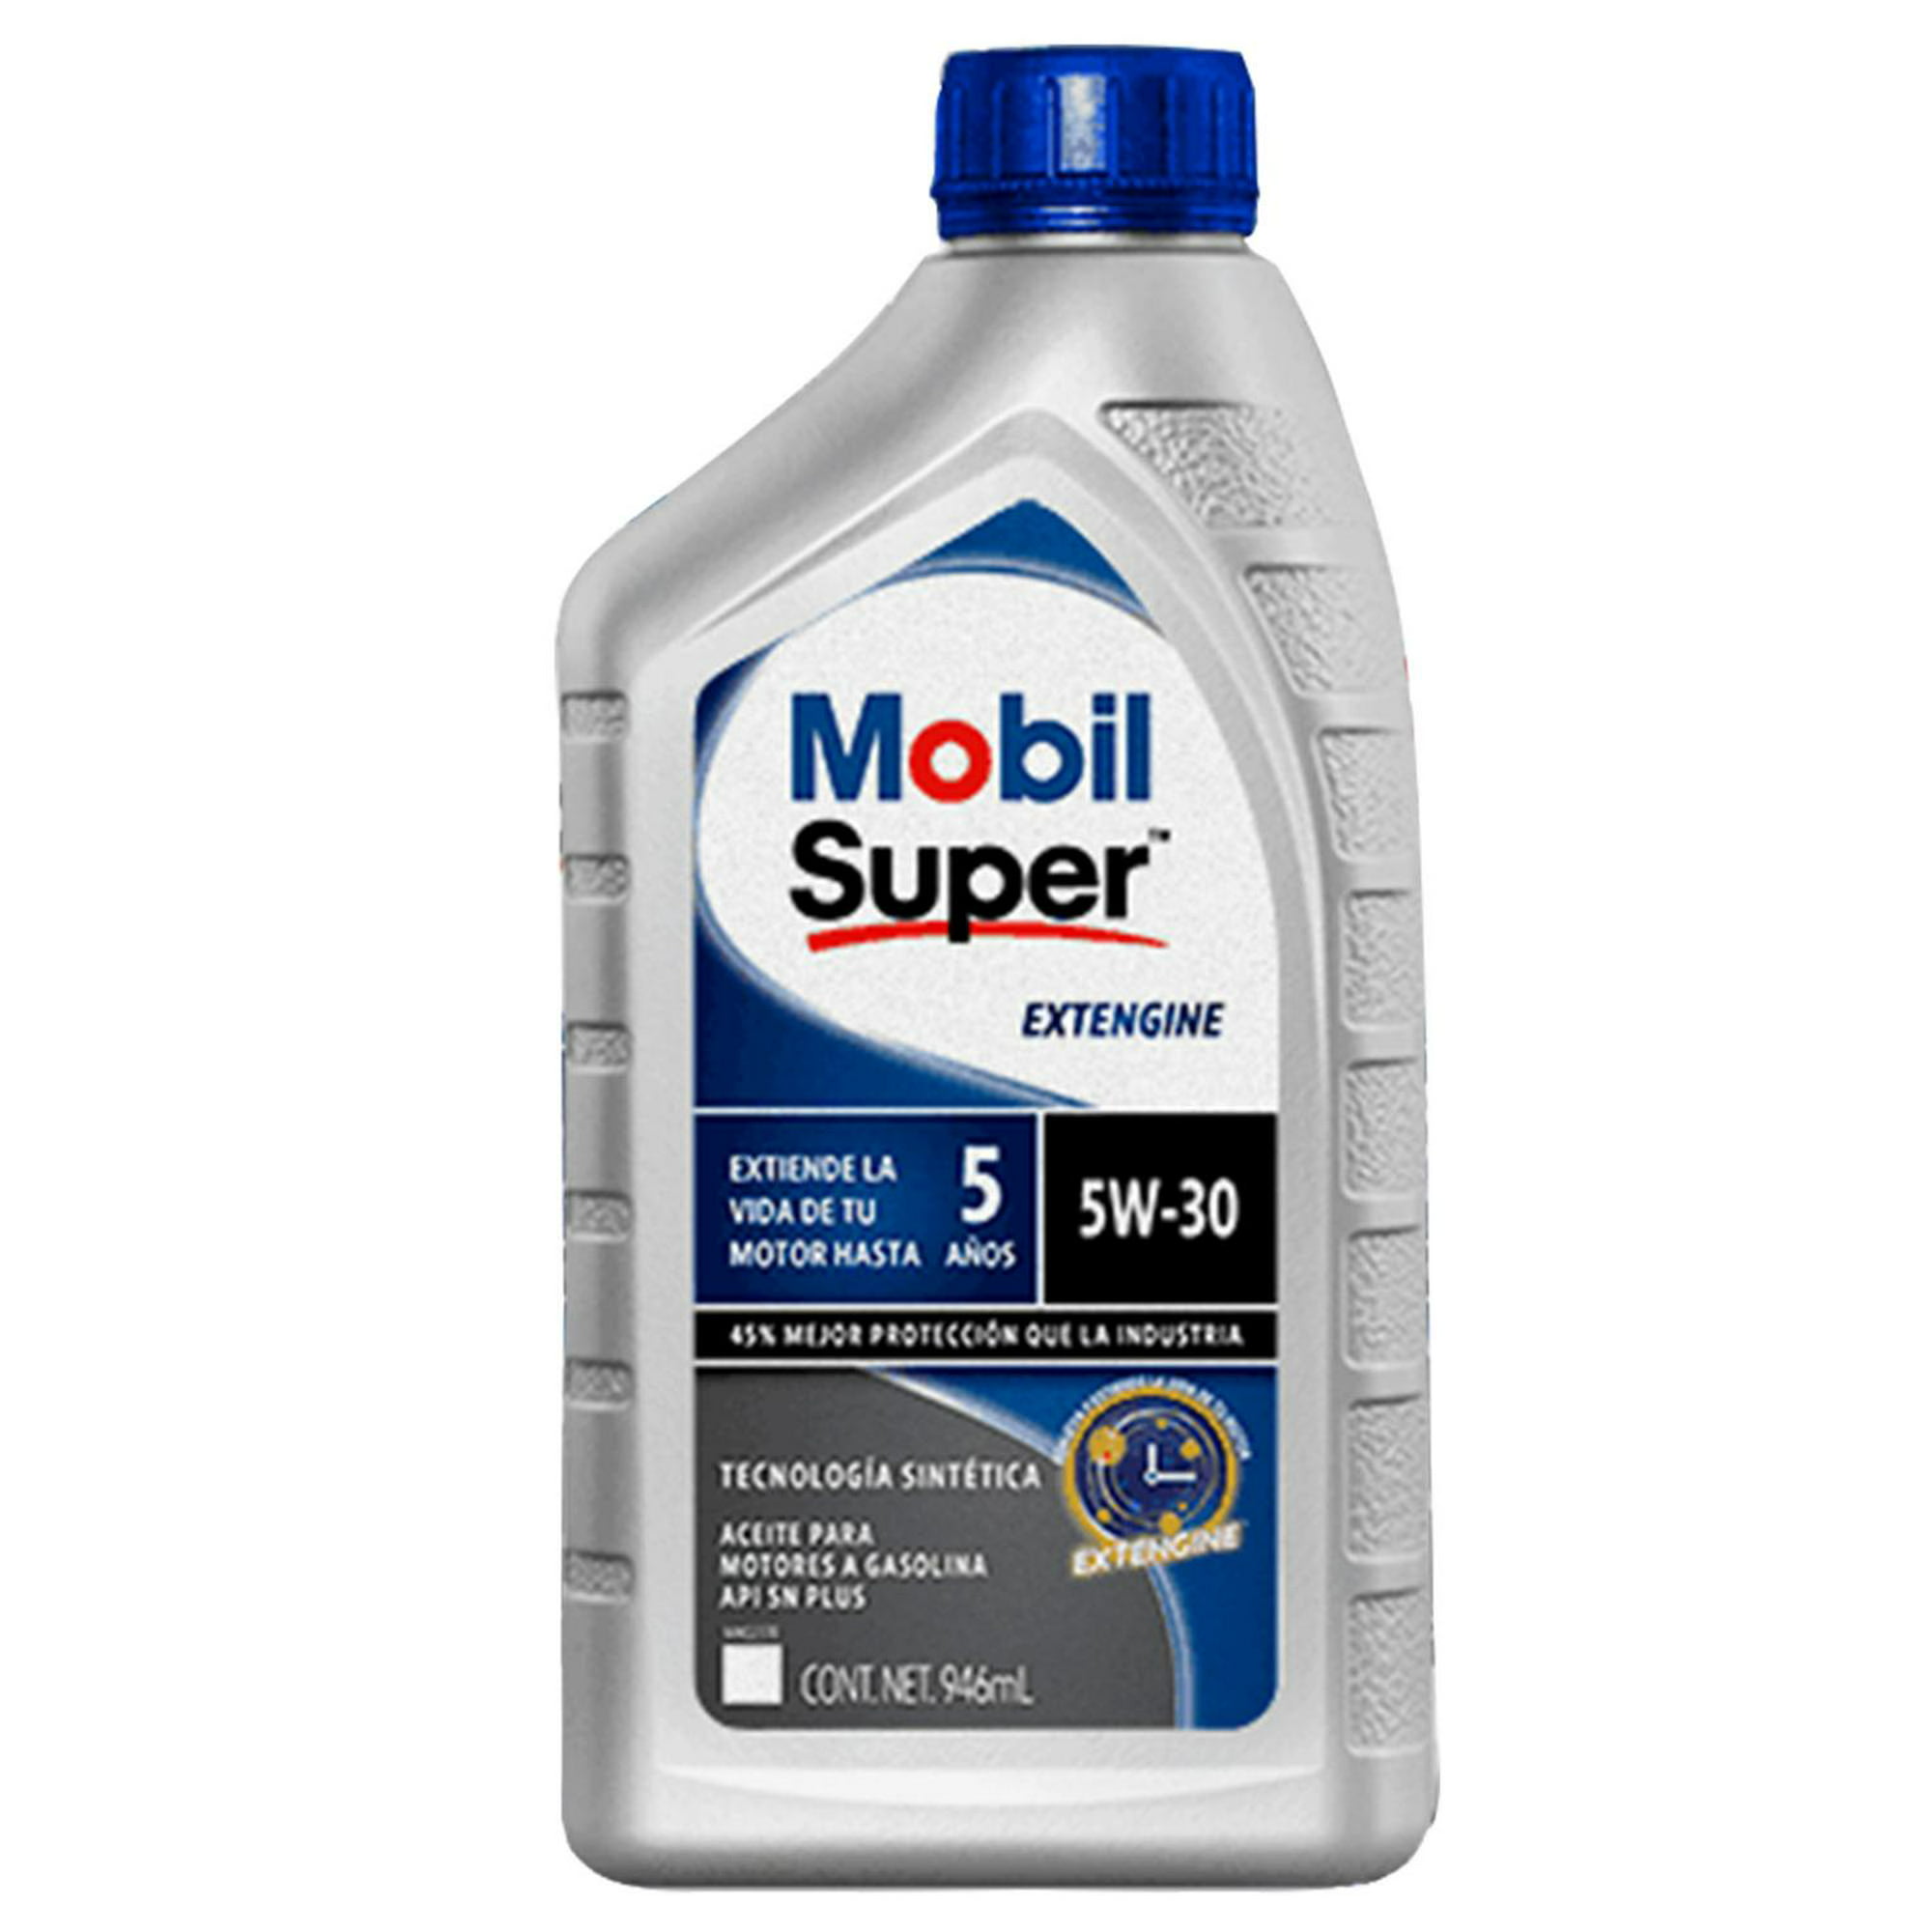 Aceite Para Auto Mobil Super Sintético 10w-40 4.73 L